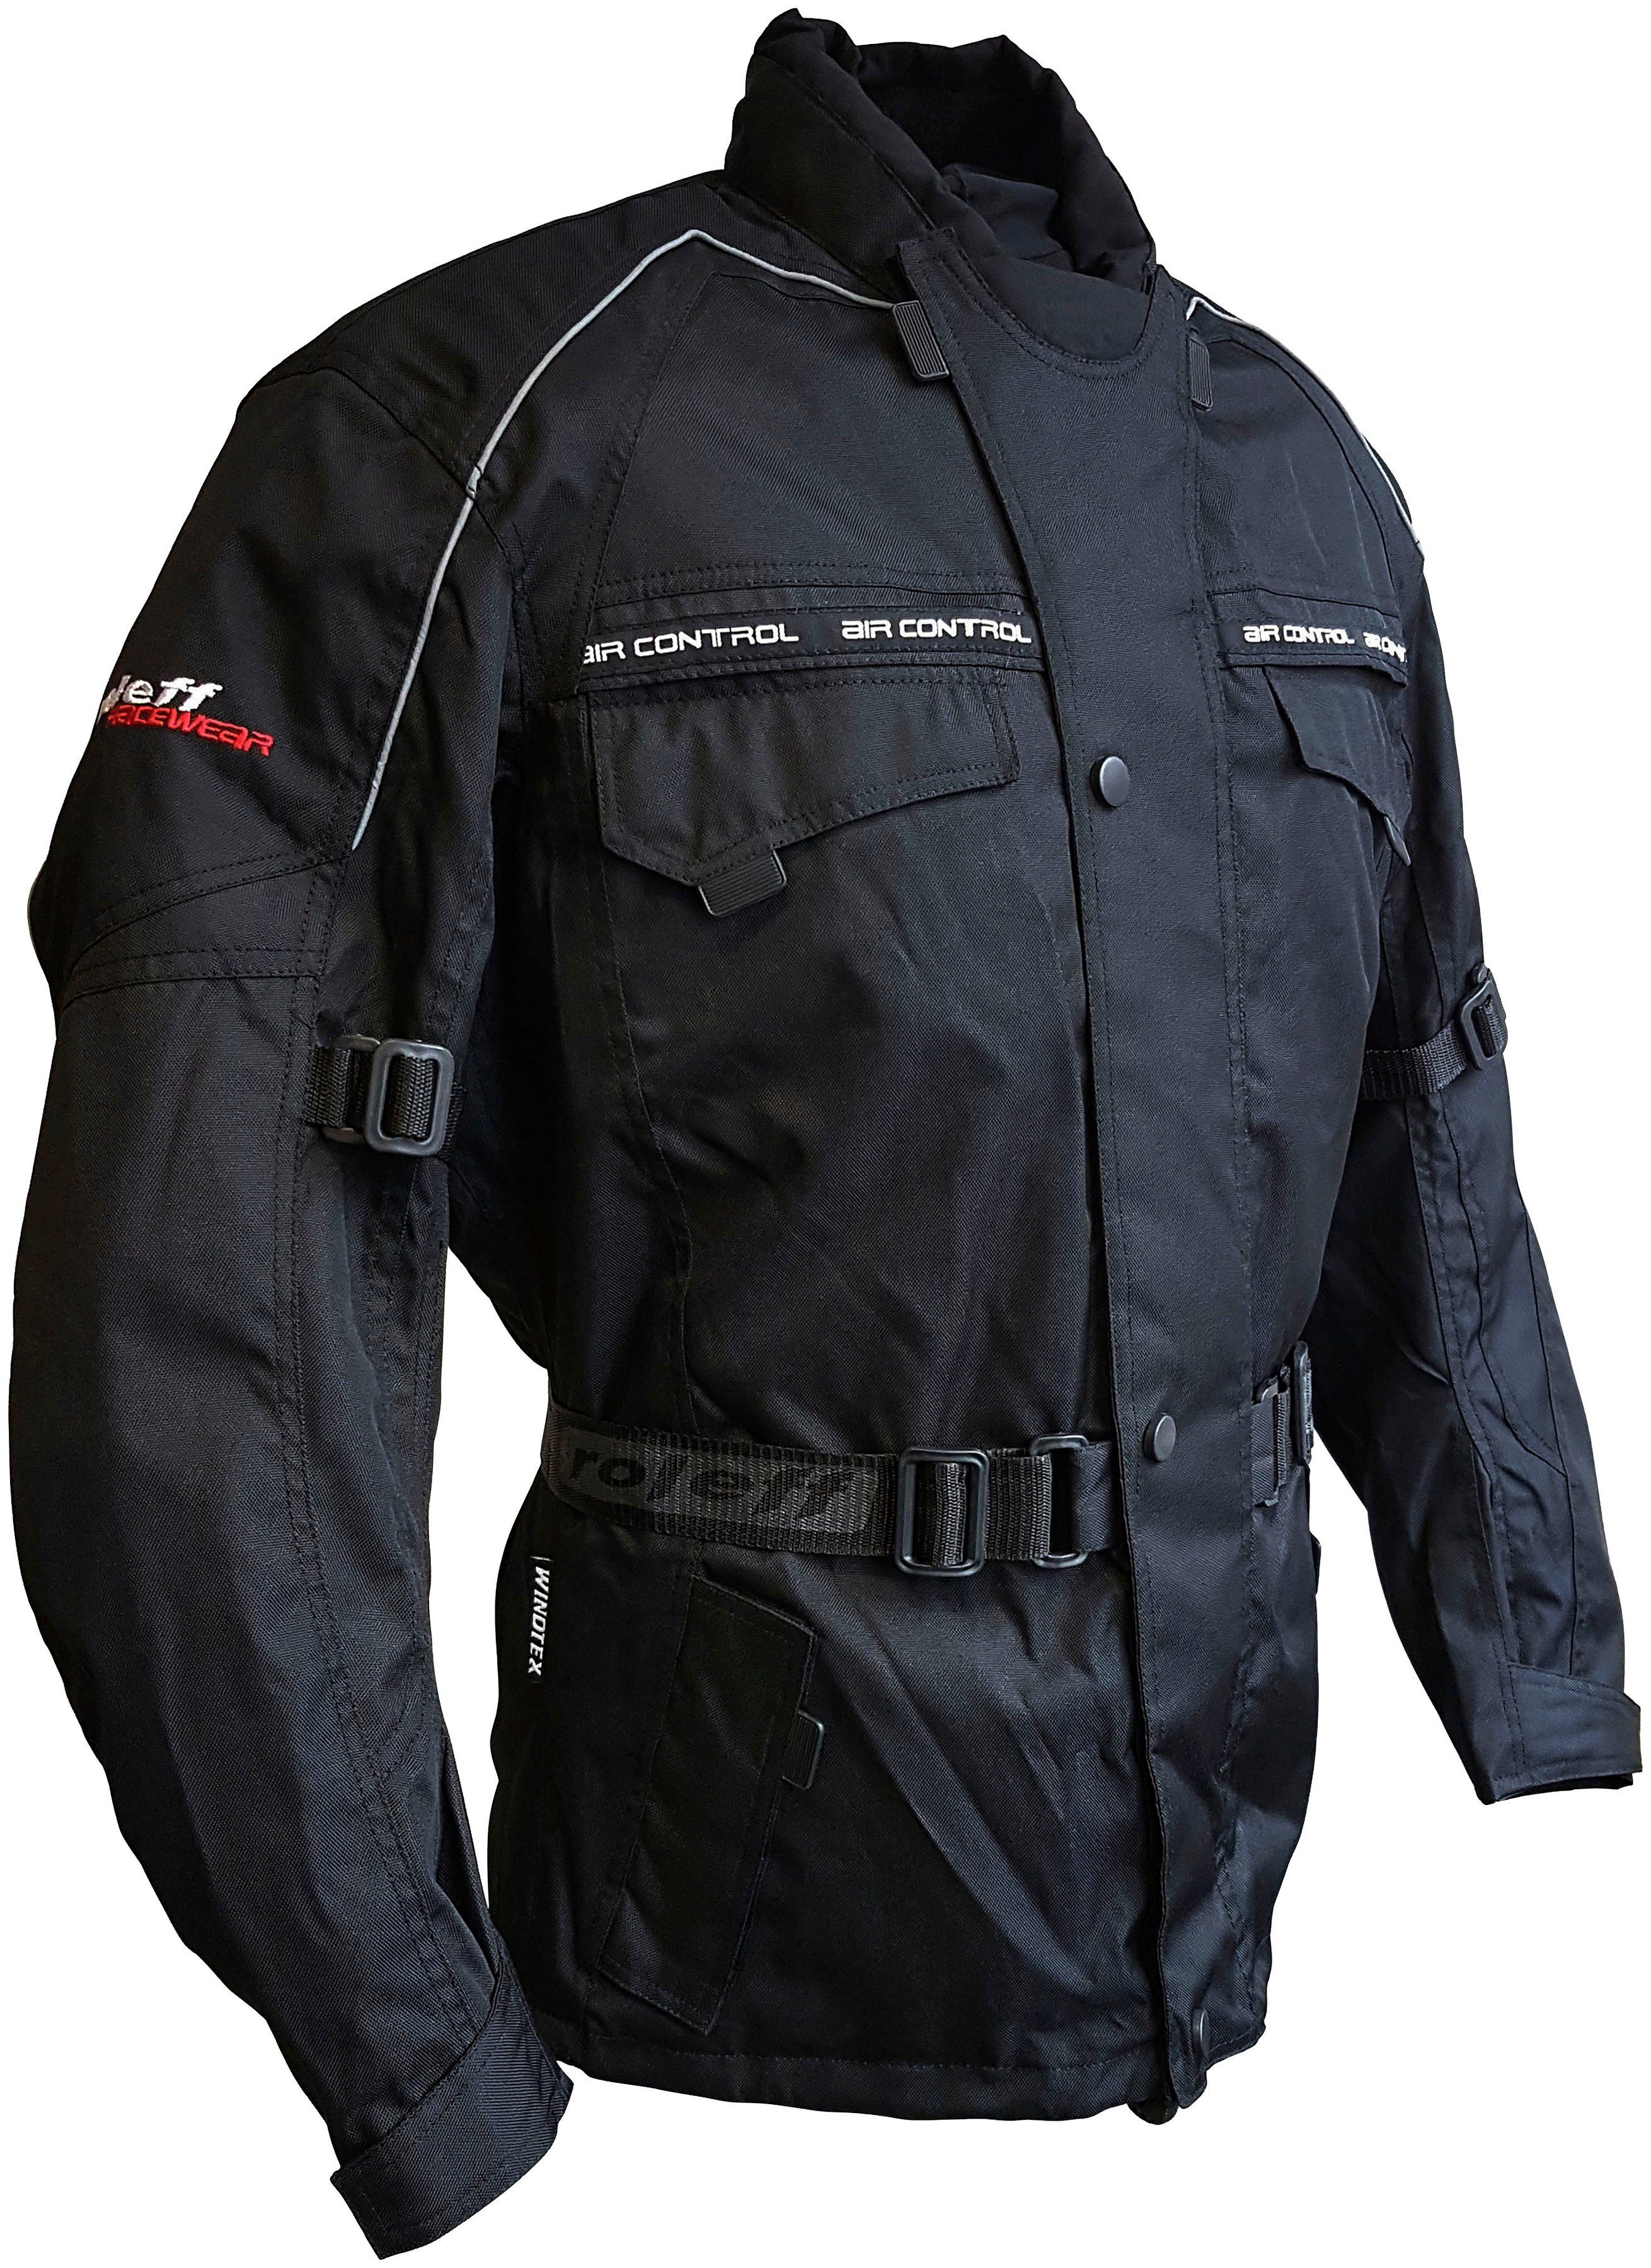 roleff Motorradjacke Reno mit Protektoren, 4 Taschen, Belüftungslöcher schwarz 3